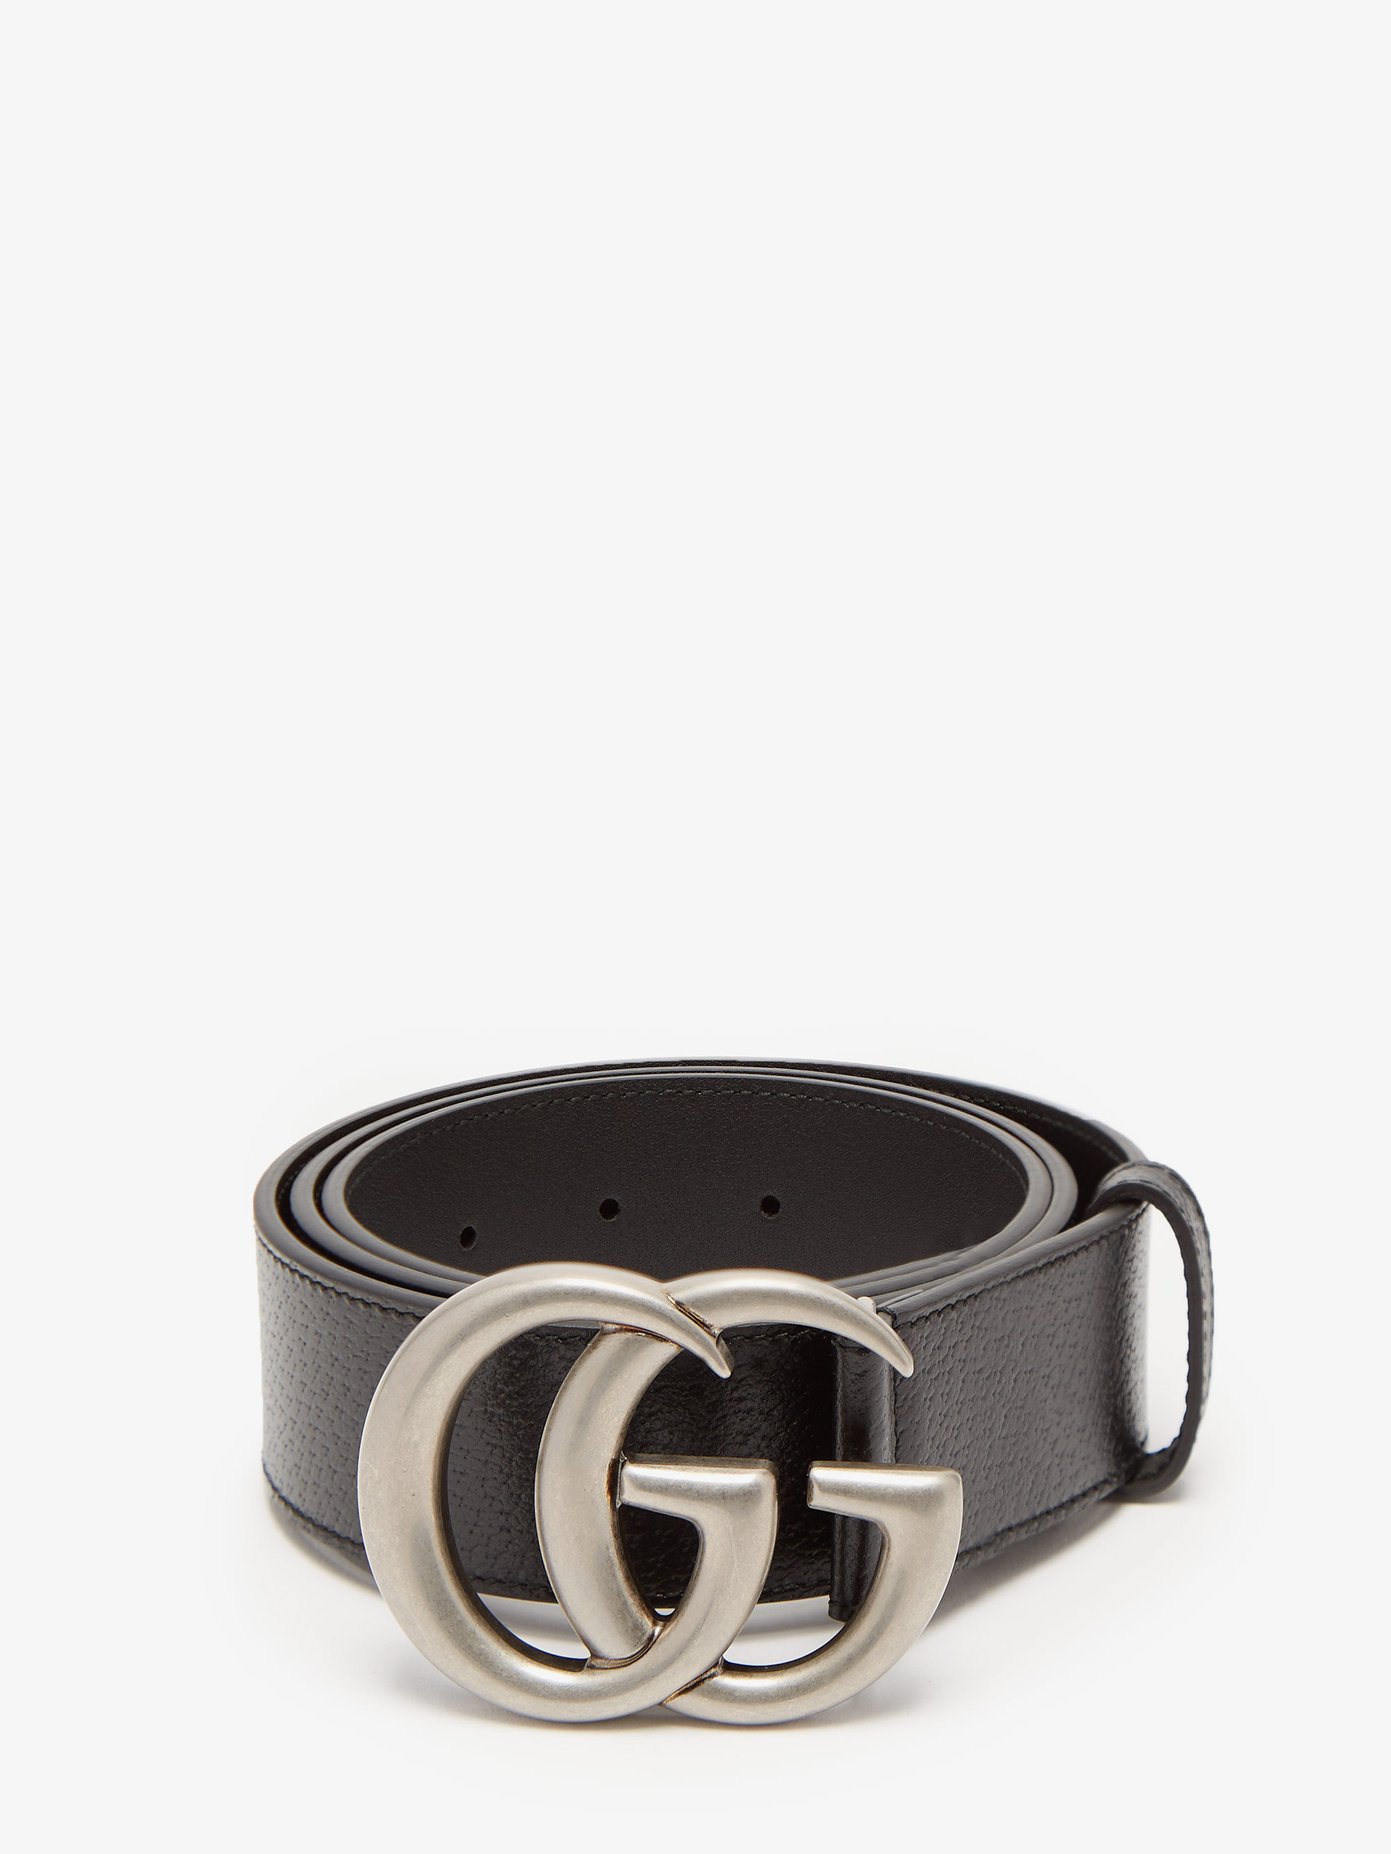 GG leather belt | Gucci | MATCHESFASHION UK